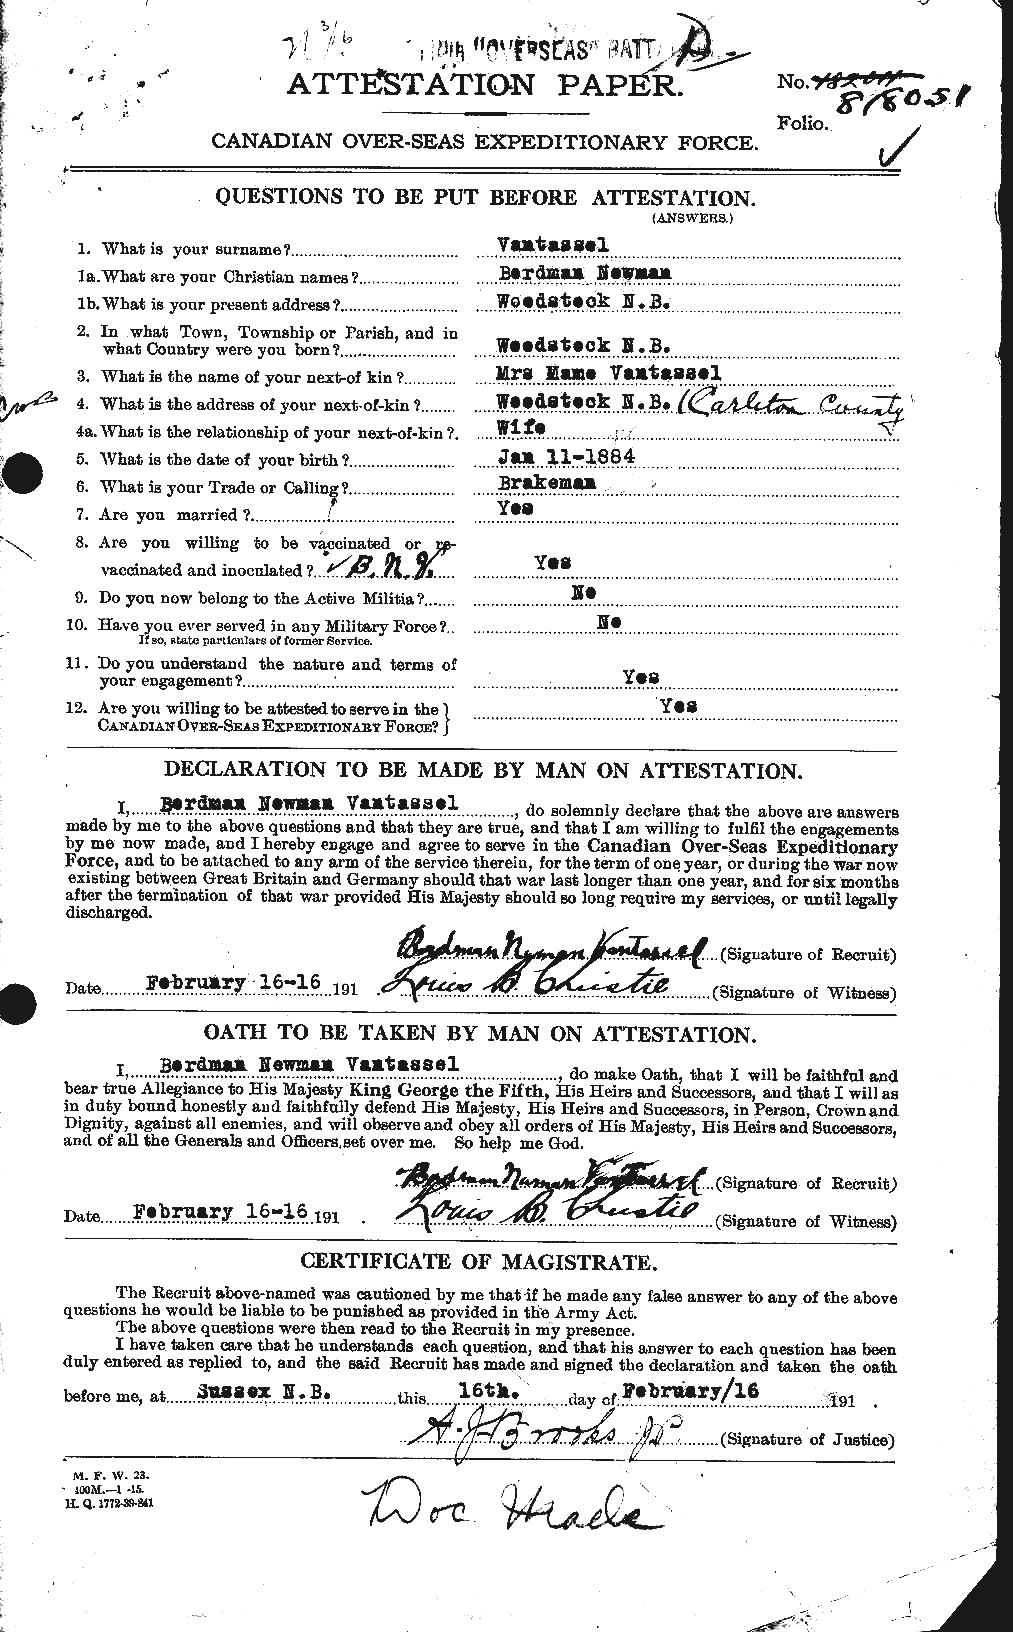 Dossiers du Personnel de la Première Guerre mondiale - CEC 648953a